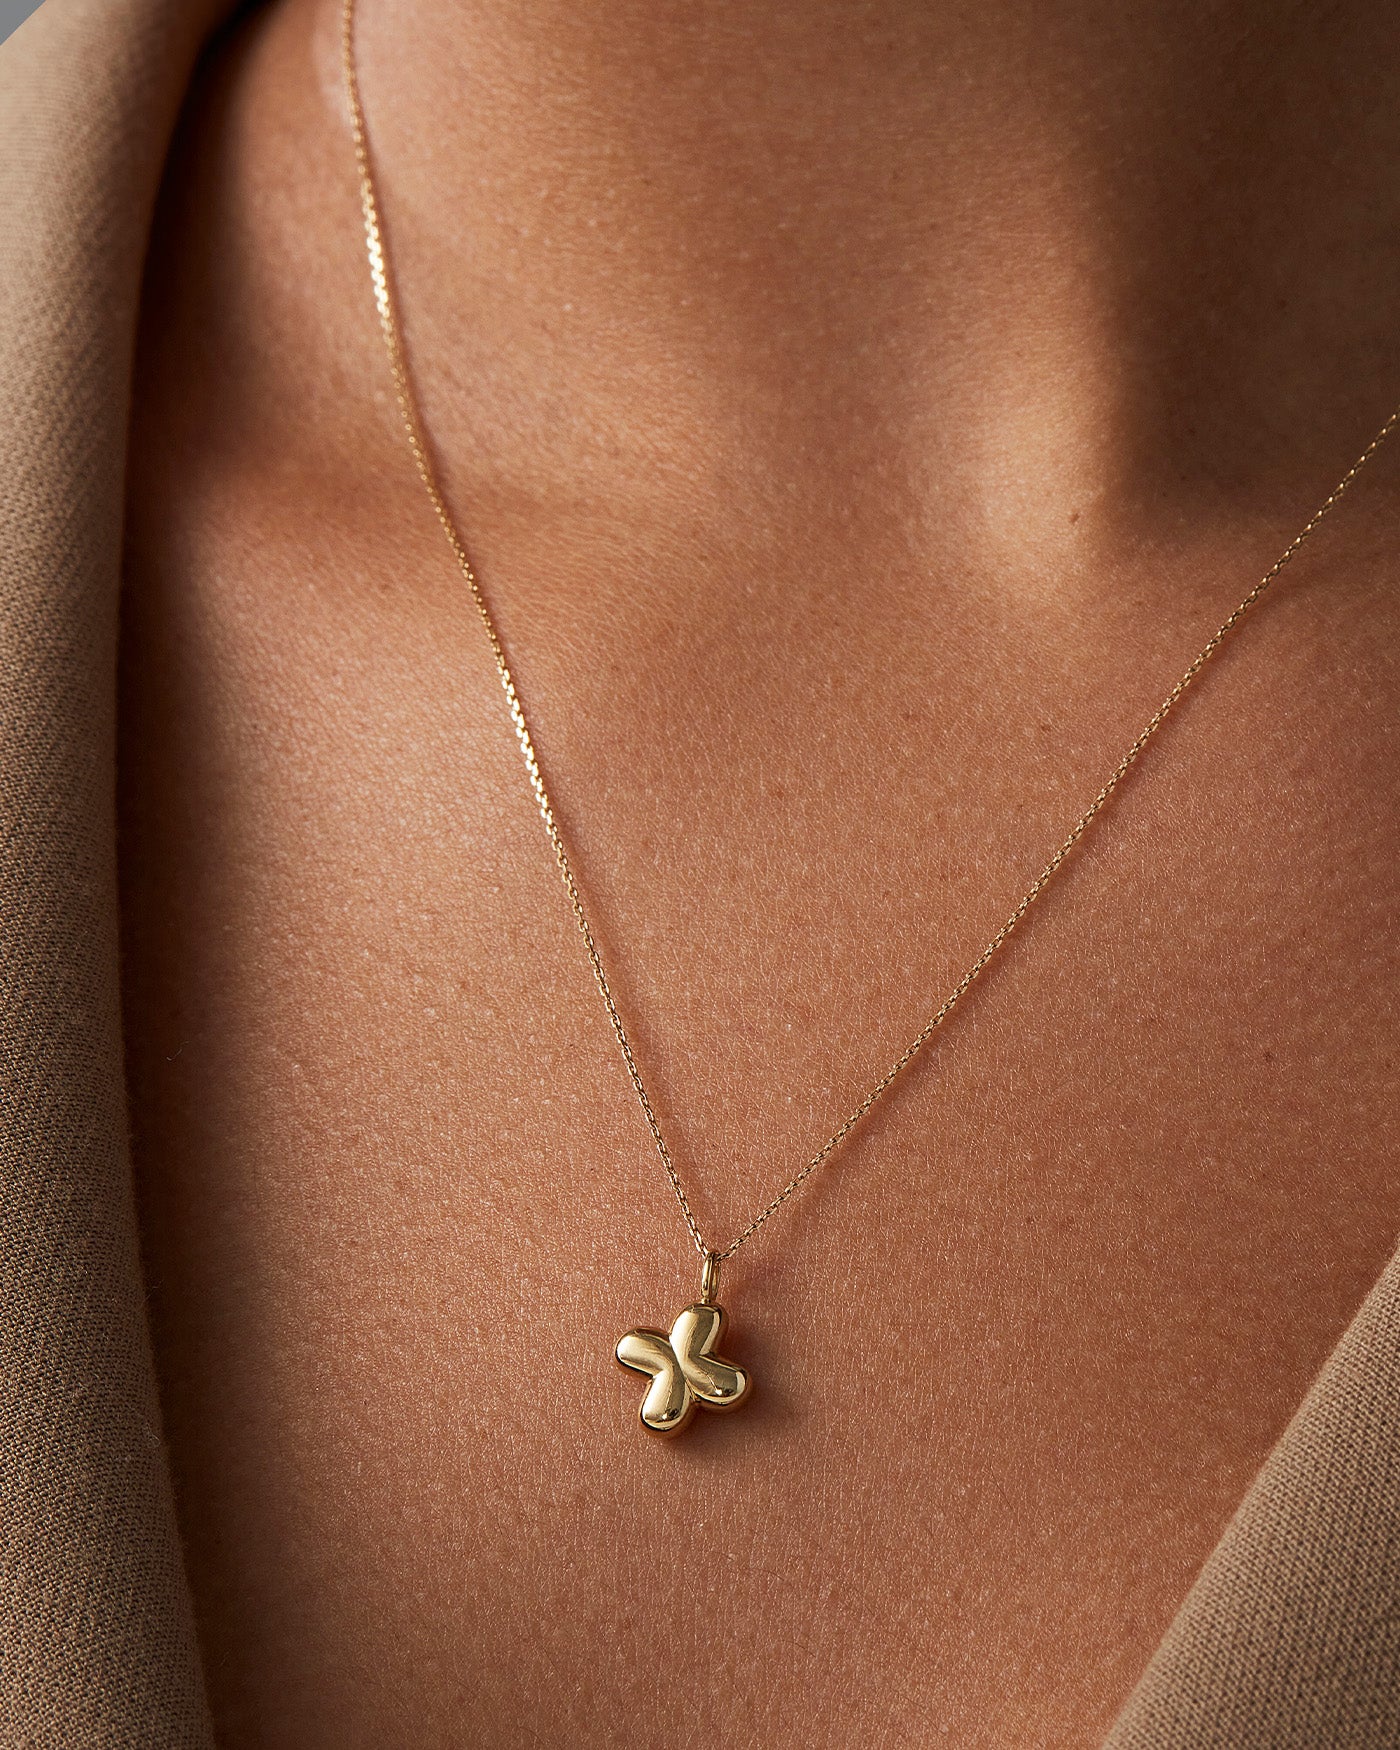 14K Gold Four Leaf Clover Necklace